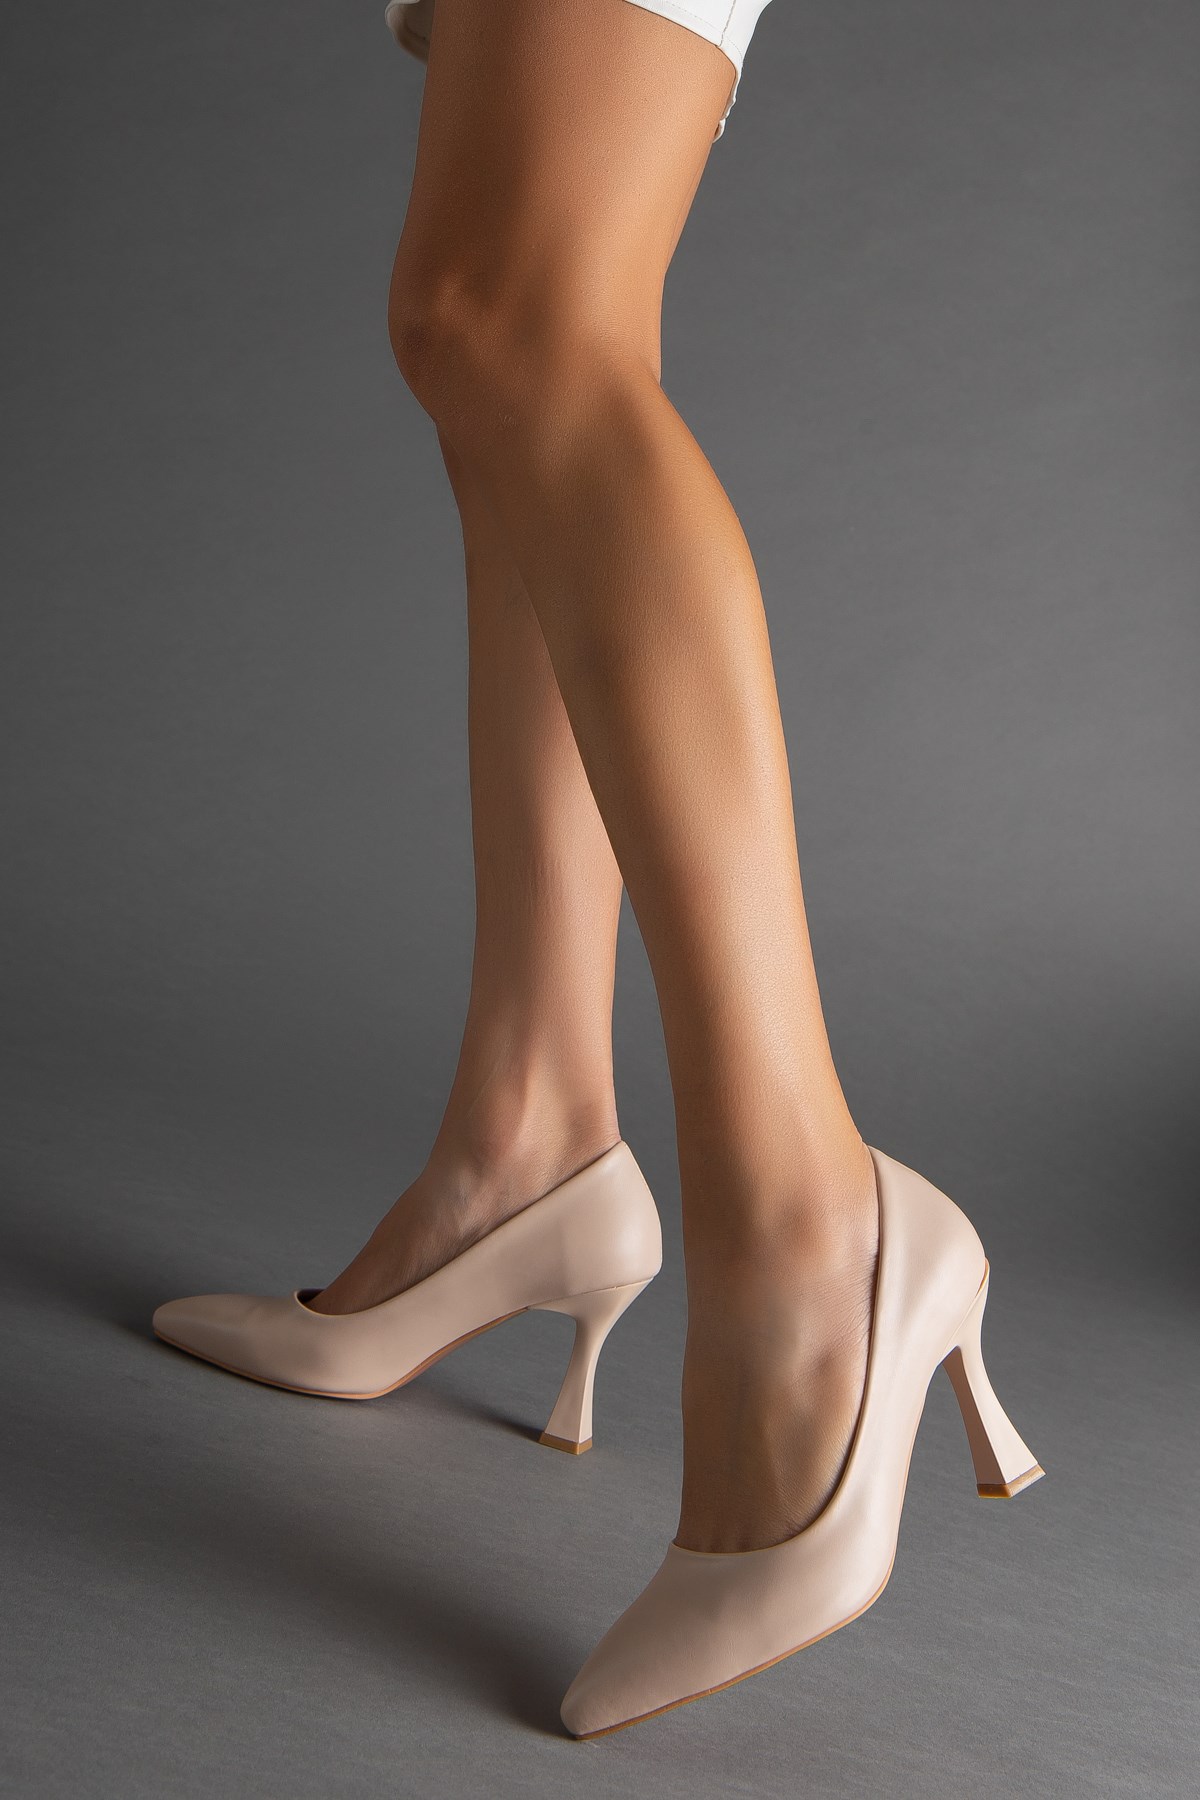 Cilt İnce Topuk Nude Büyük Numara Kadın Ayakkabısı Topuklu Stiletto